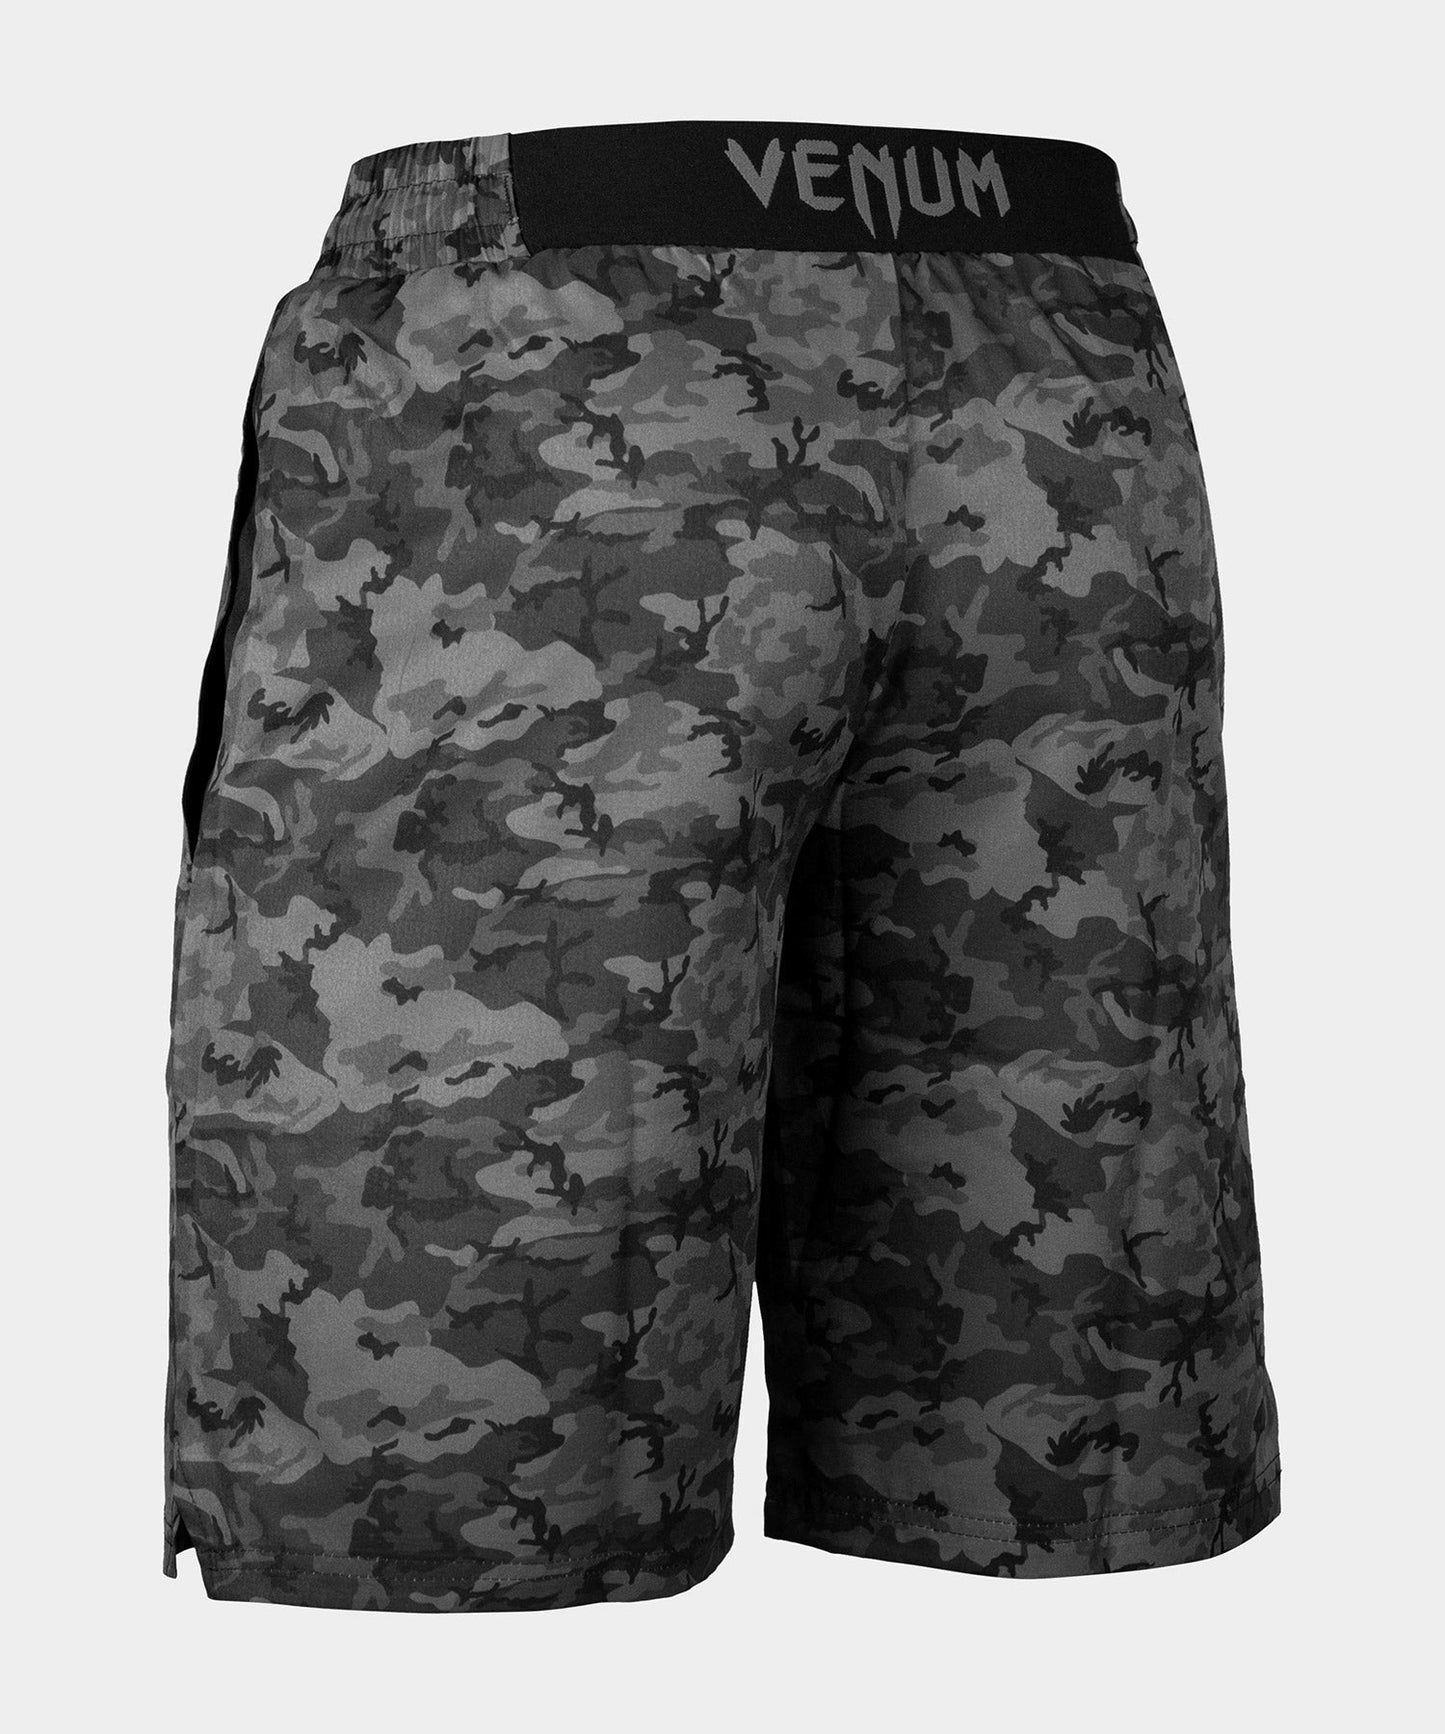 Venum Classic Training Shorts - Urban Camo